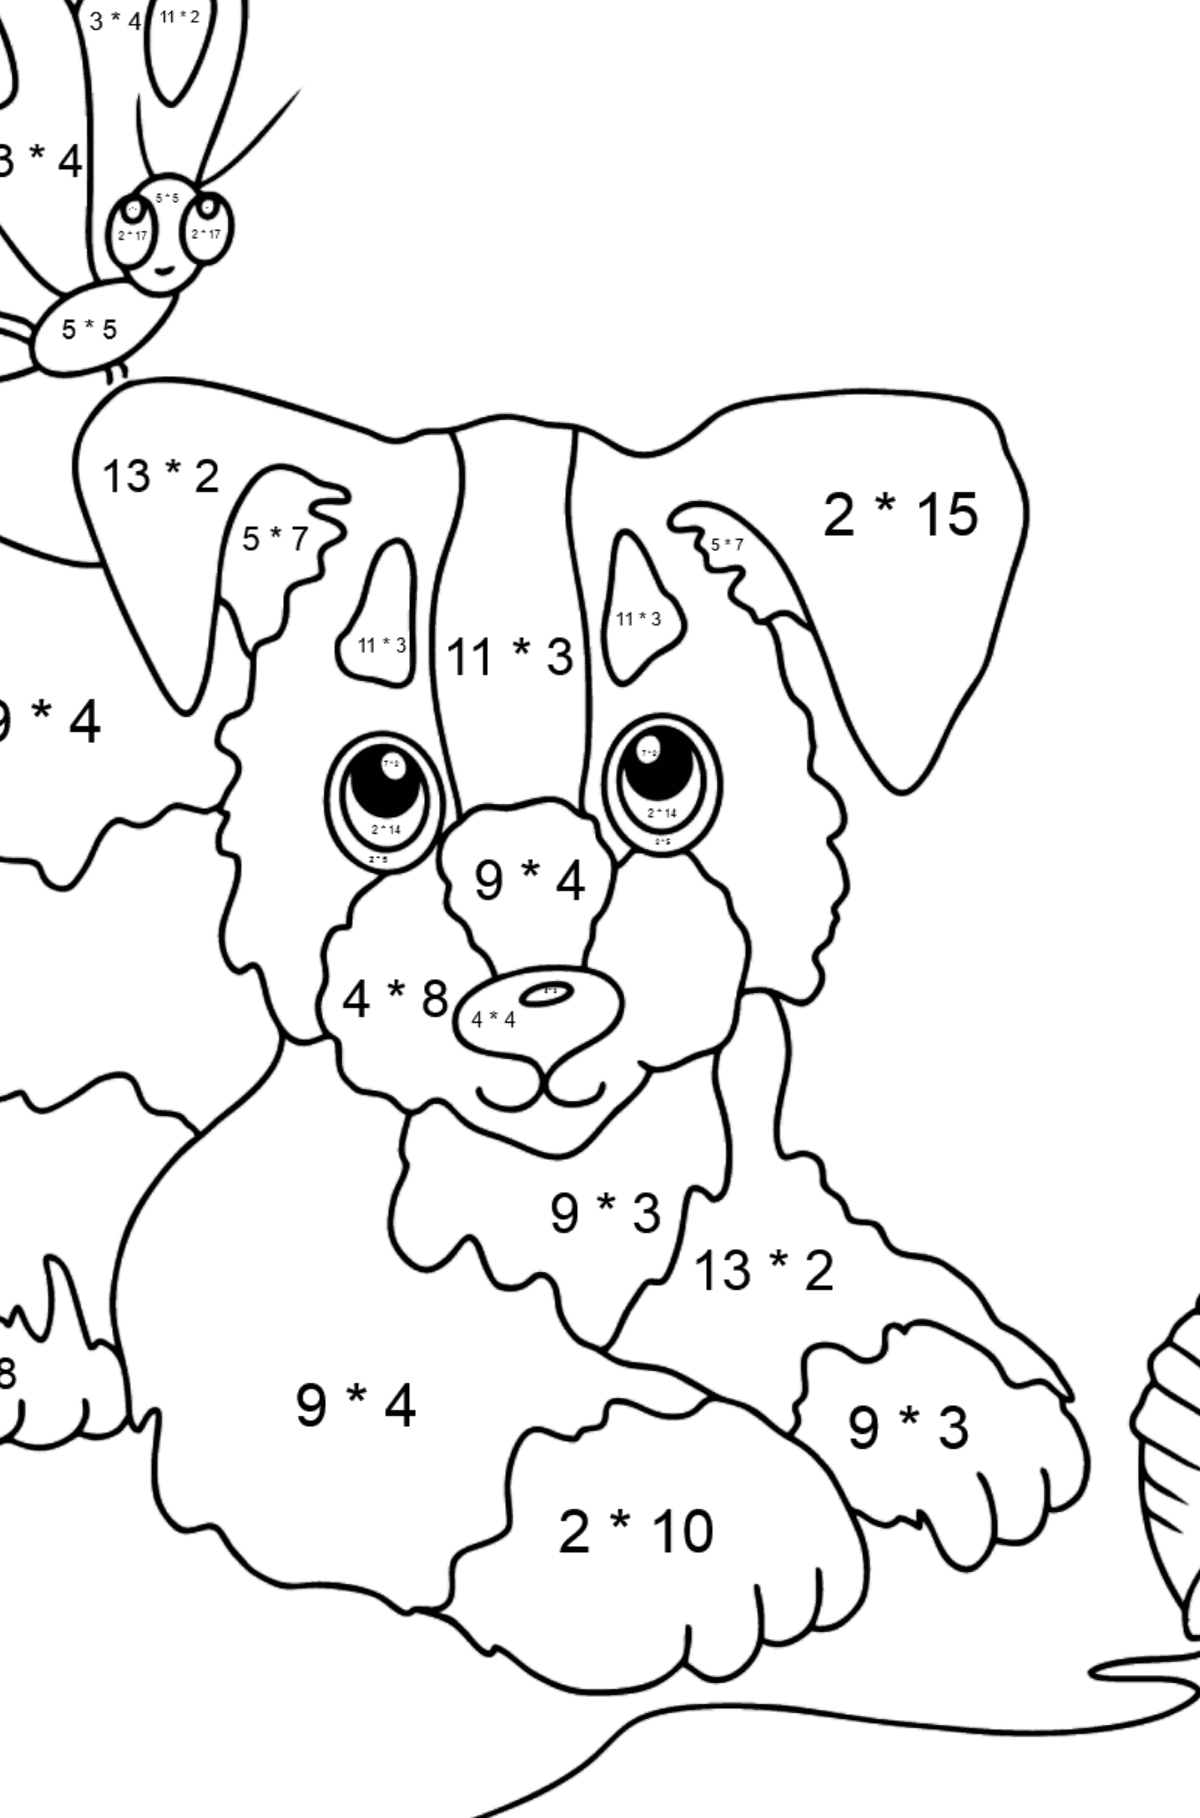 Ausmalbild - Ein Hund spielt mit einem Garnknäuel und Schmetterlingen - Mathe Ausmalbilder - Multiplikation für Kinder